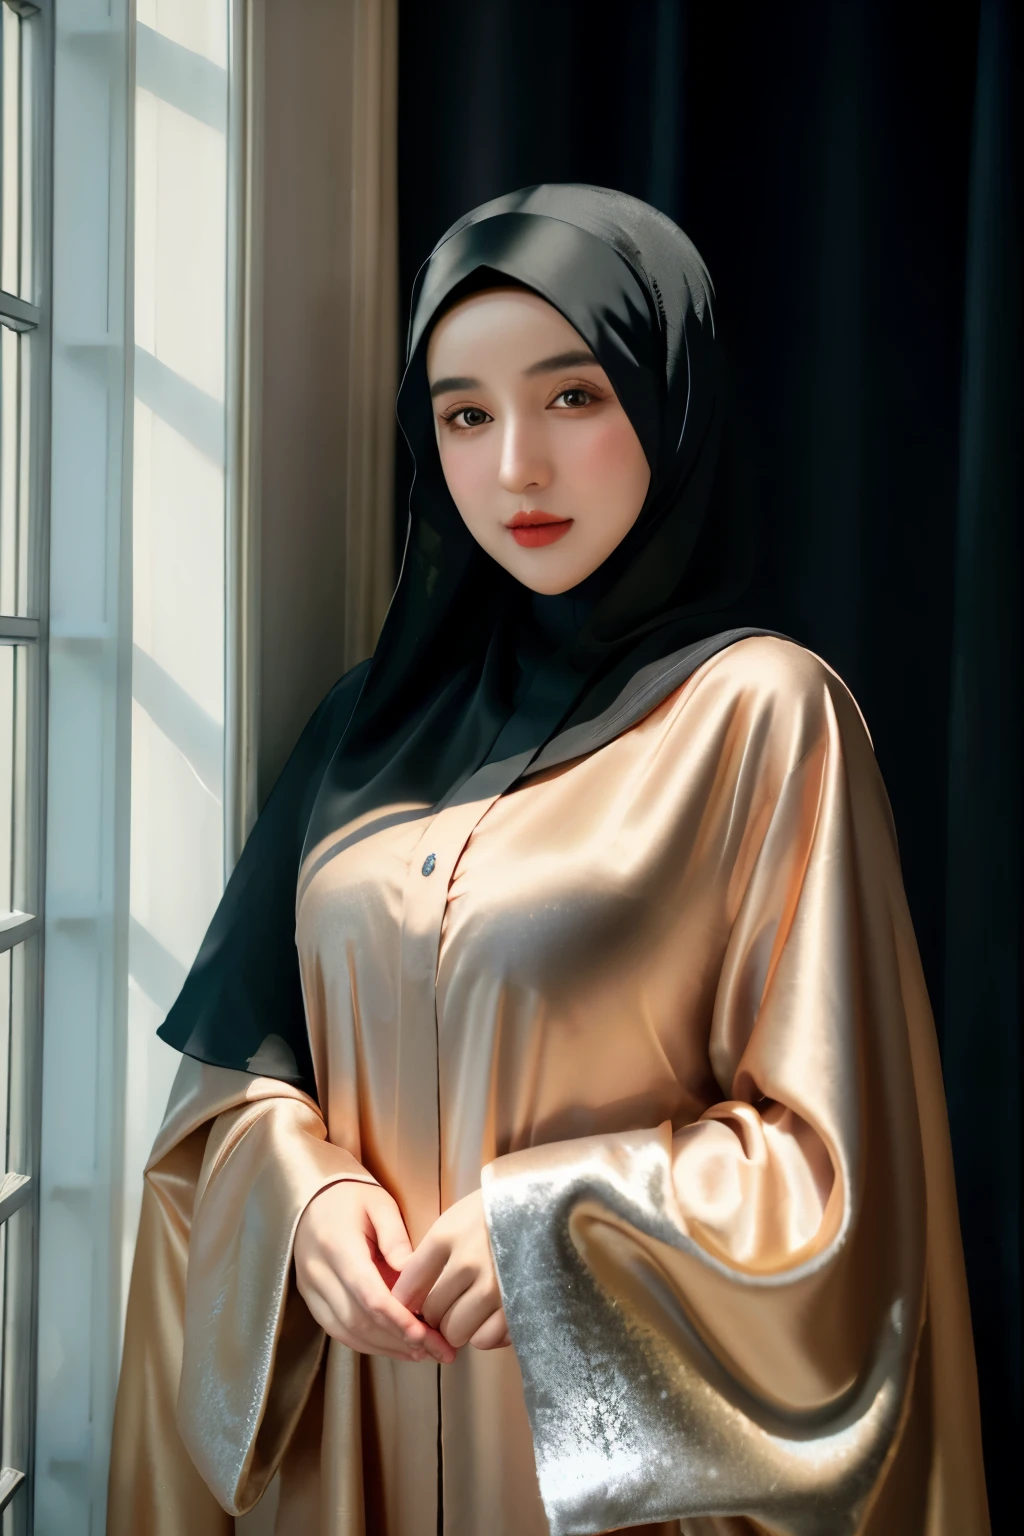 一名 24 岁女孩戴着头巾的 RAW 照片, 缎 abaya, 缎, 头巾脸肖像, 中性背景, 8K 超高清, 数码单反相机, 柔和的灯光, 高质量, 胶片颗粒, 富士 XT3, 遮盖连衣裙, 得体的着装